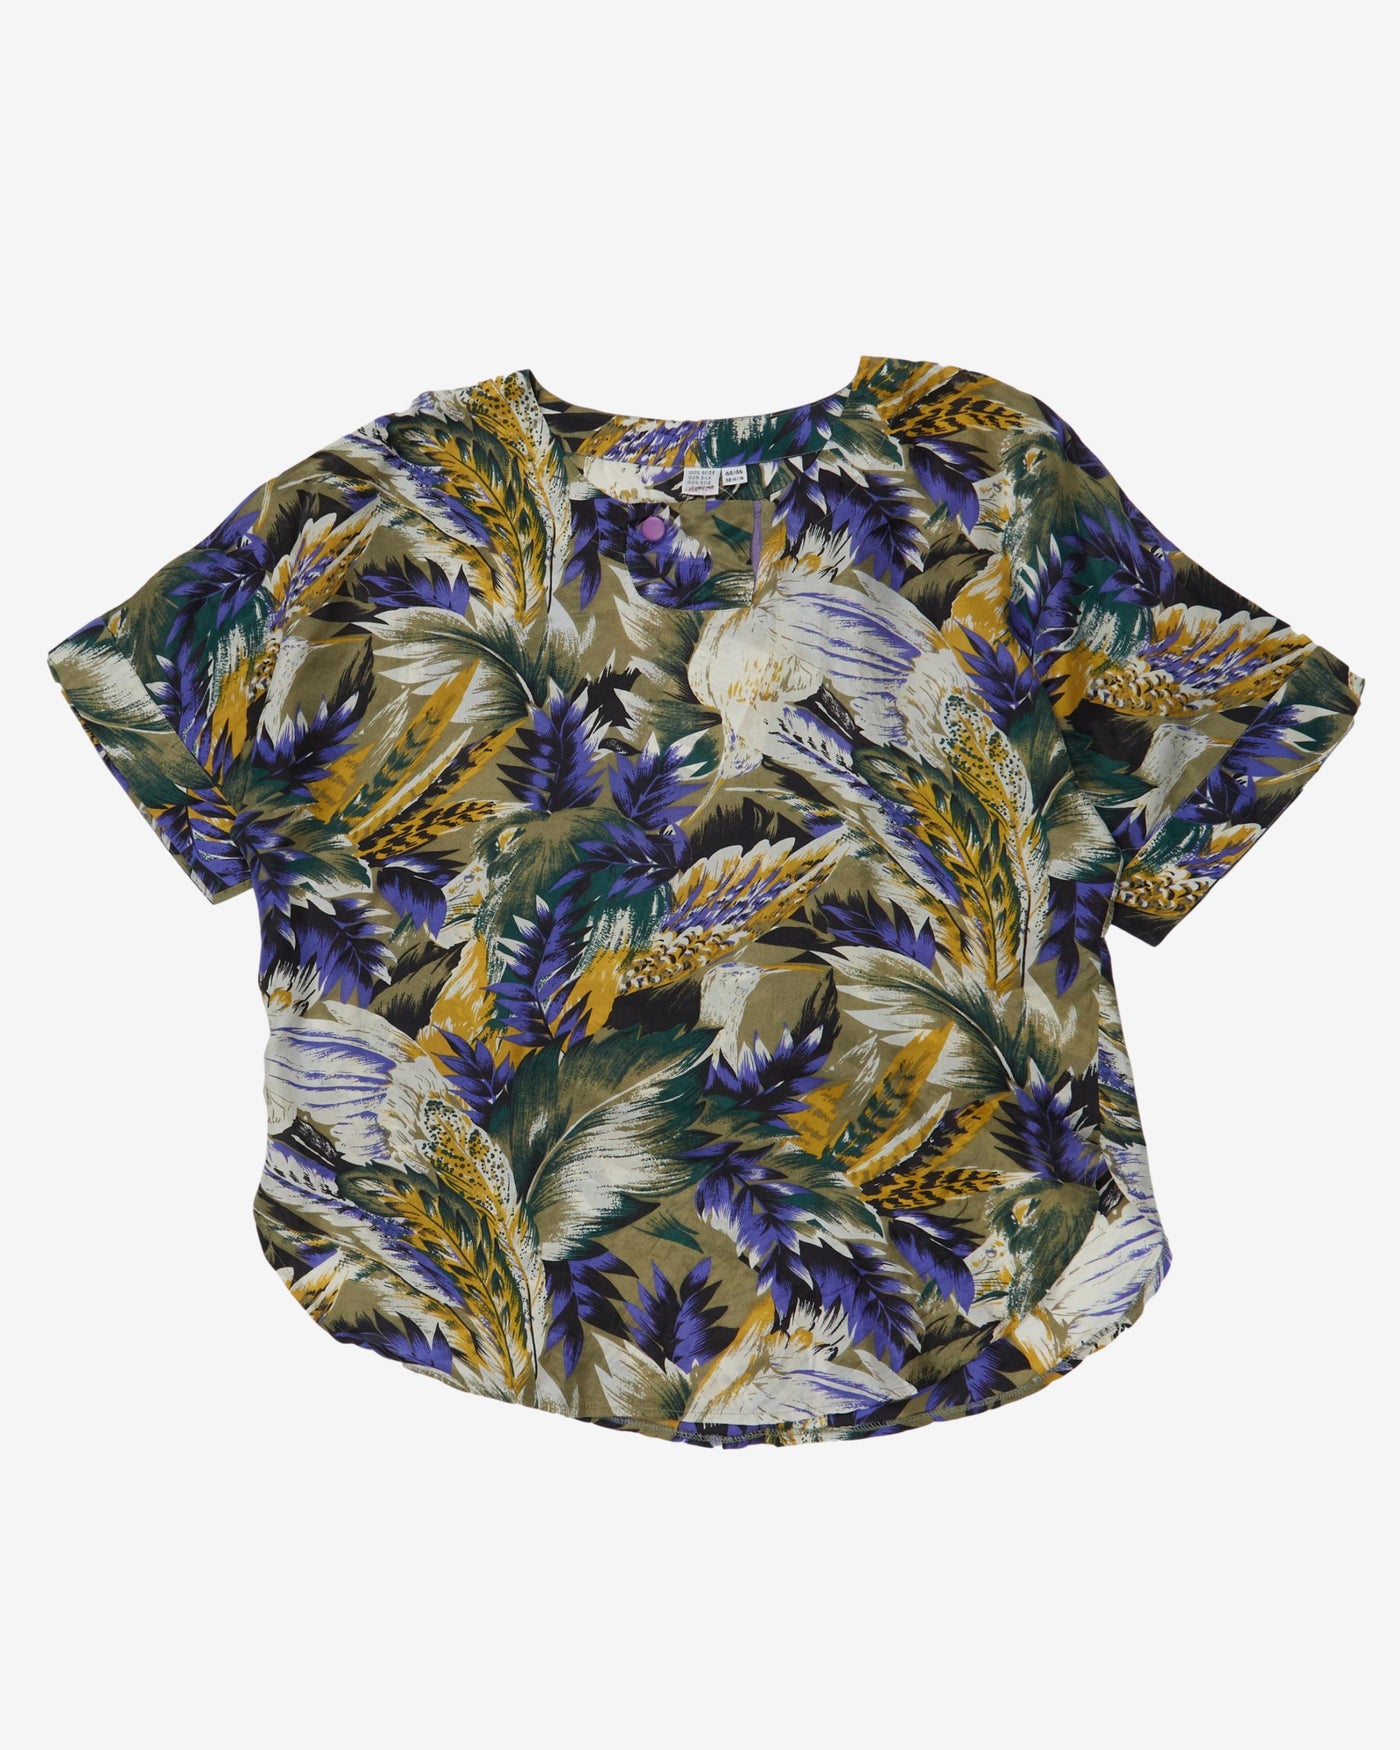 Purple floral silk patterned blouse - M / L